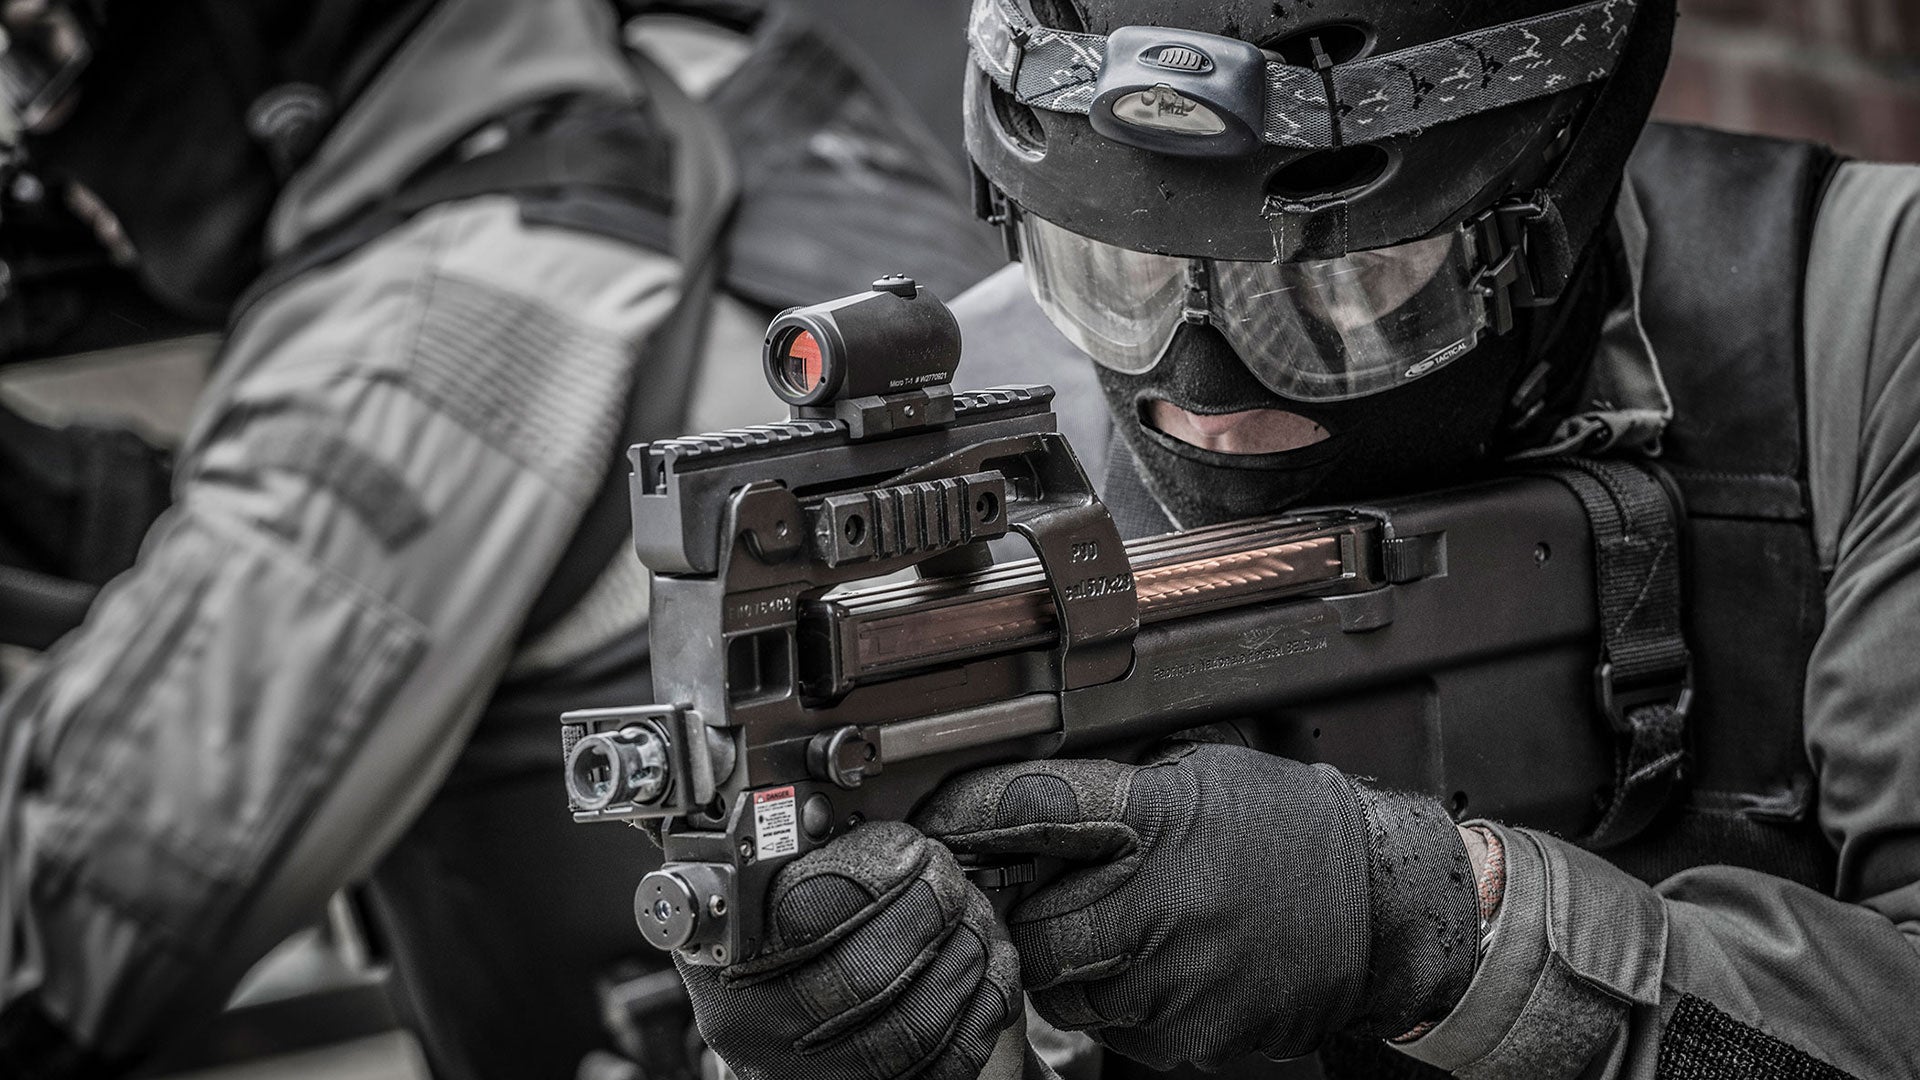 Shoulder-Fired FN 303® Tactical - FN HERSTAL